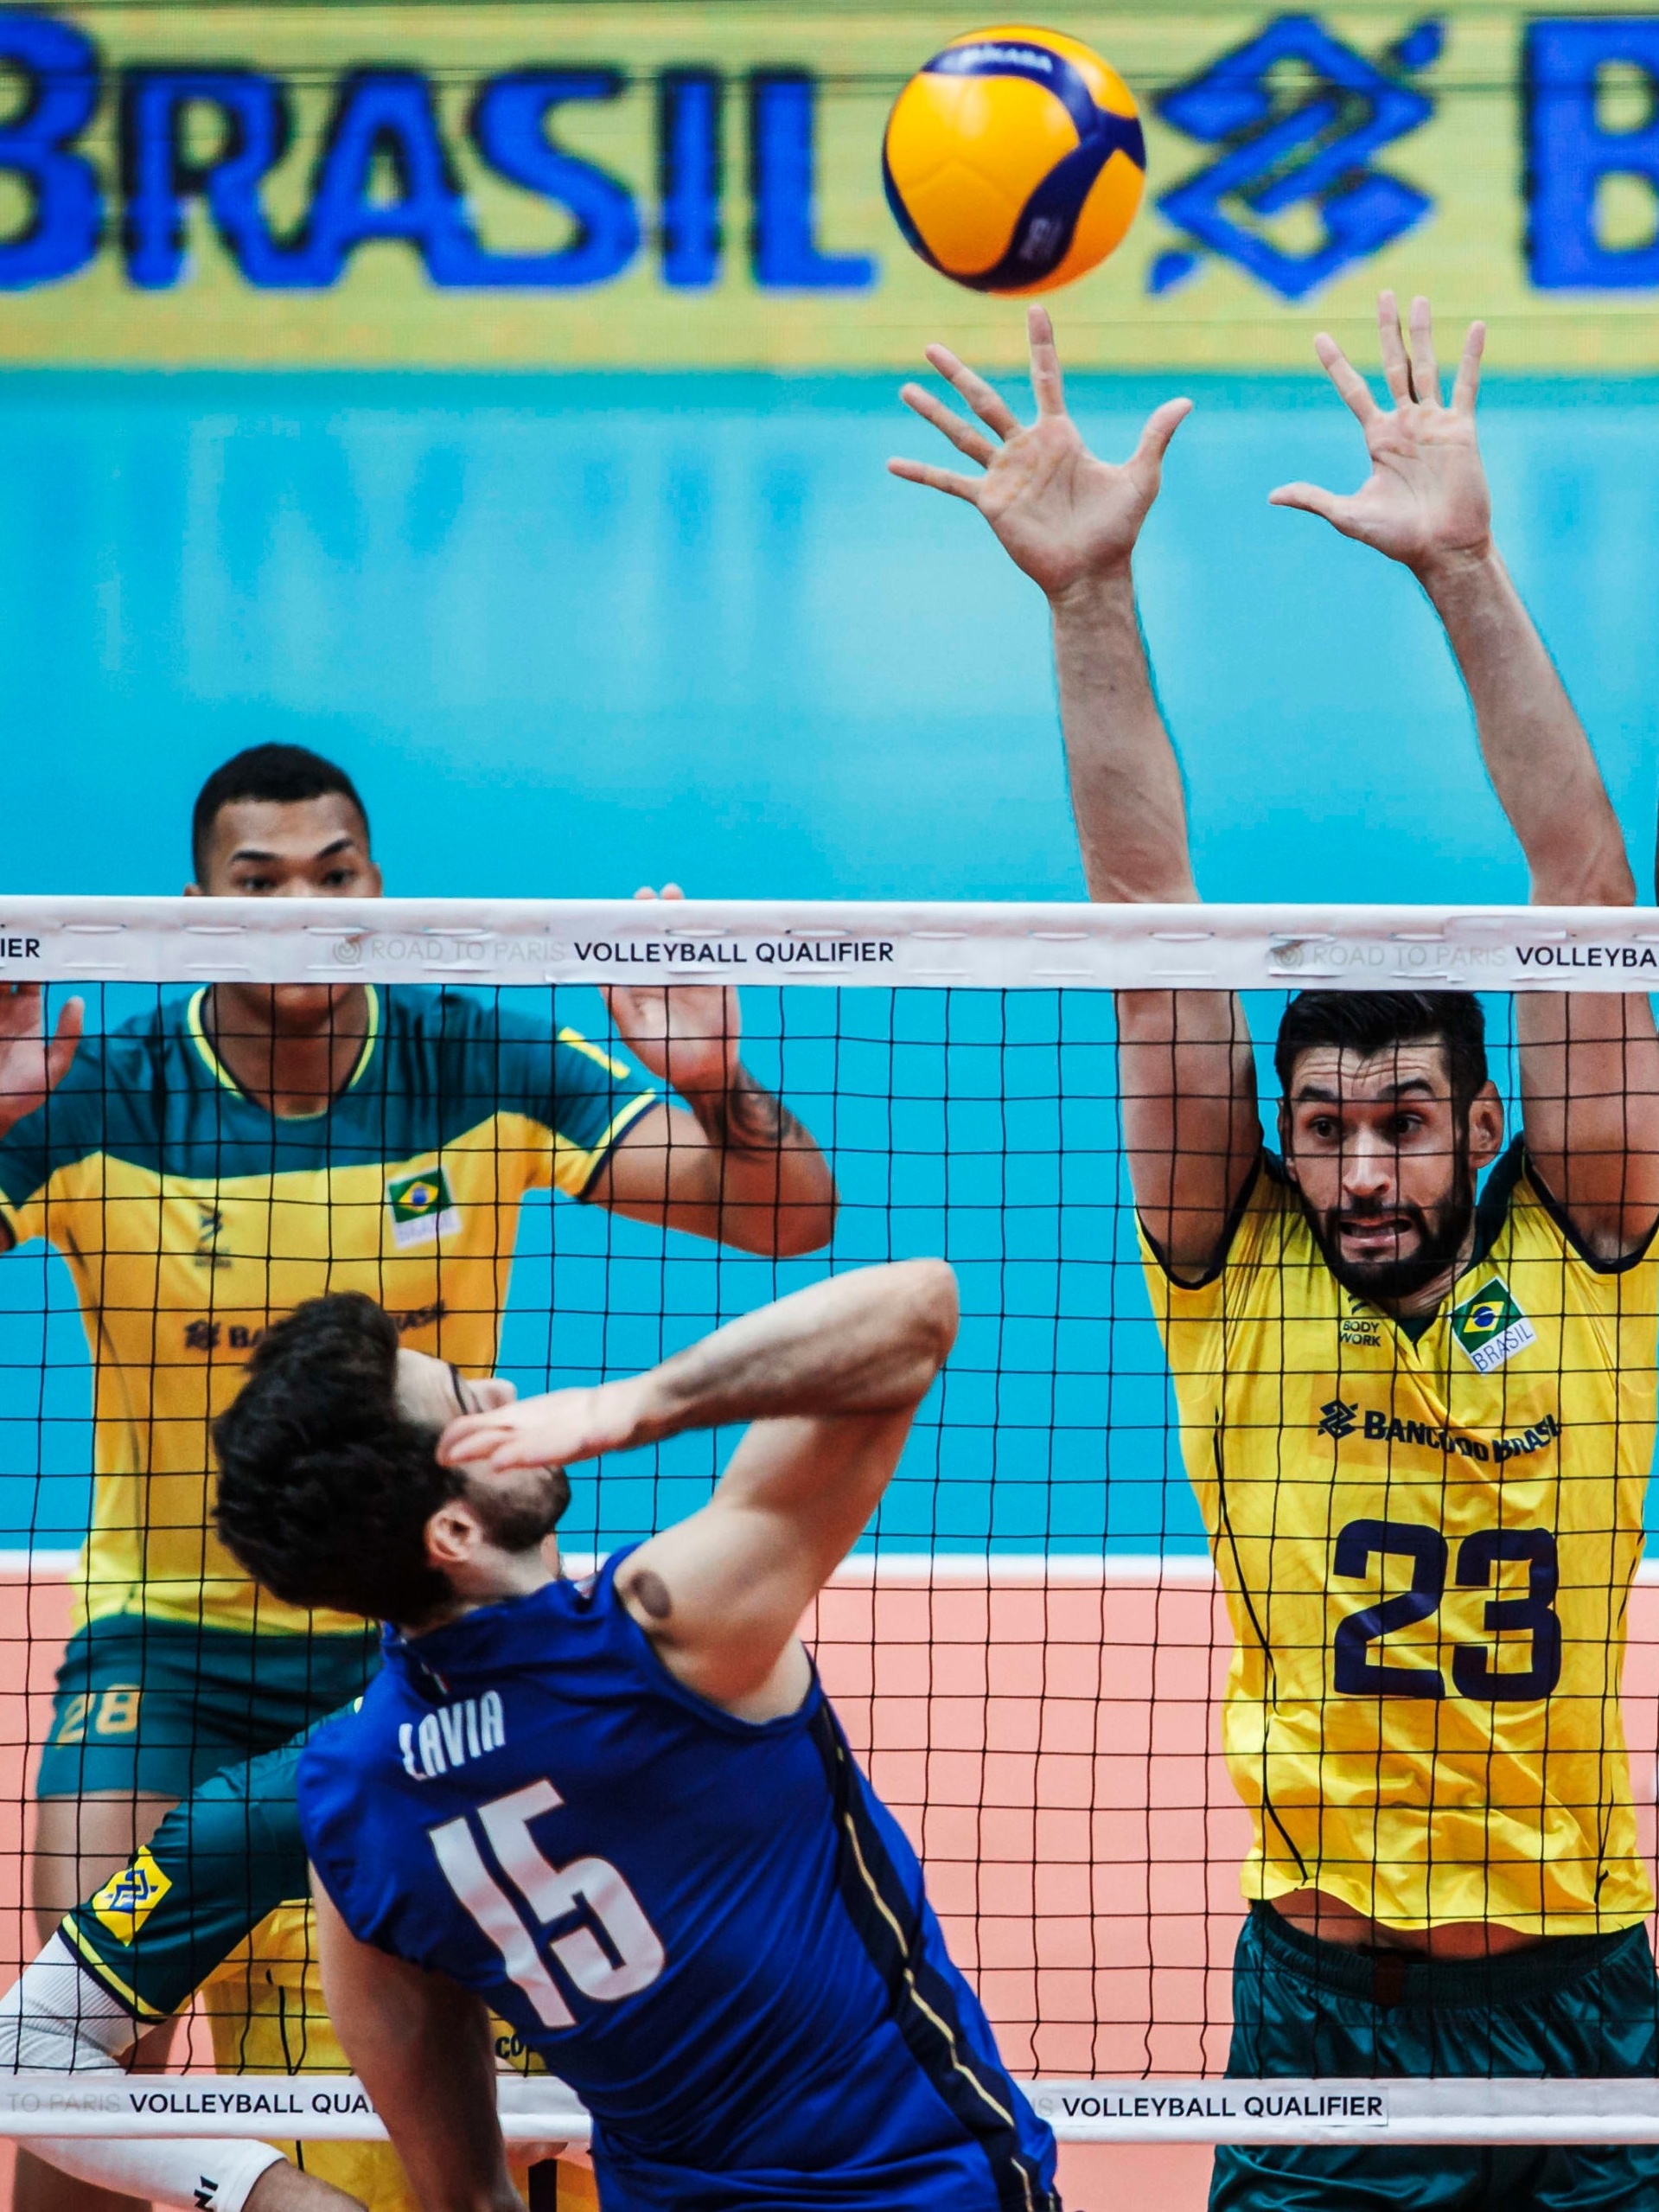 Brasil é superado no tie break na Liga das Nações masculina de vôlei